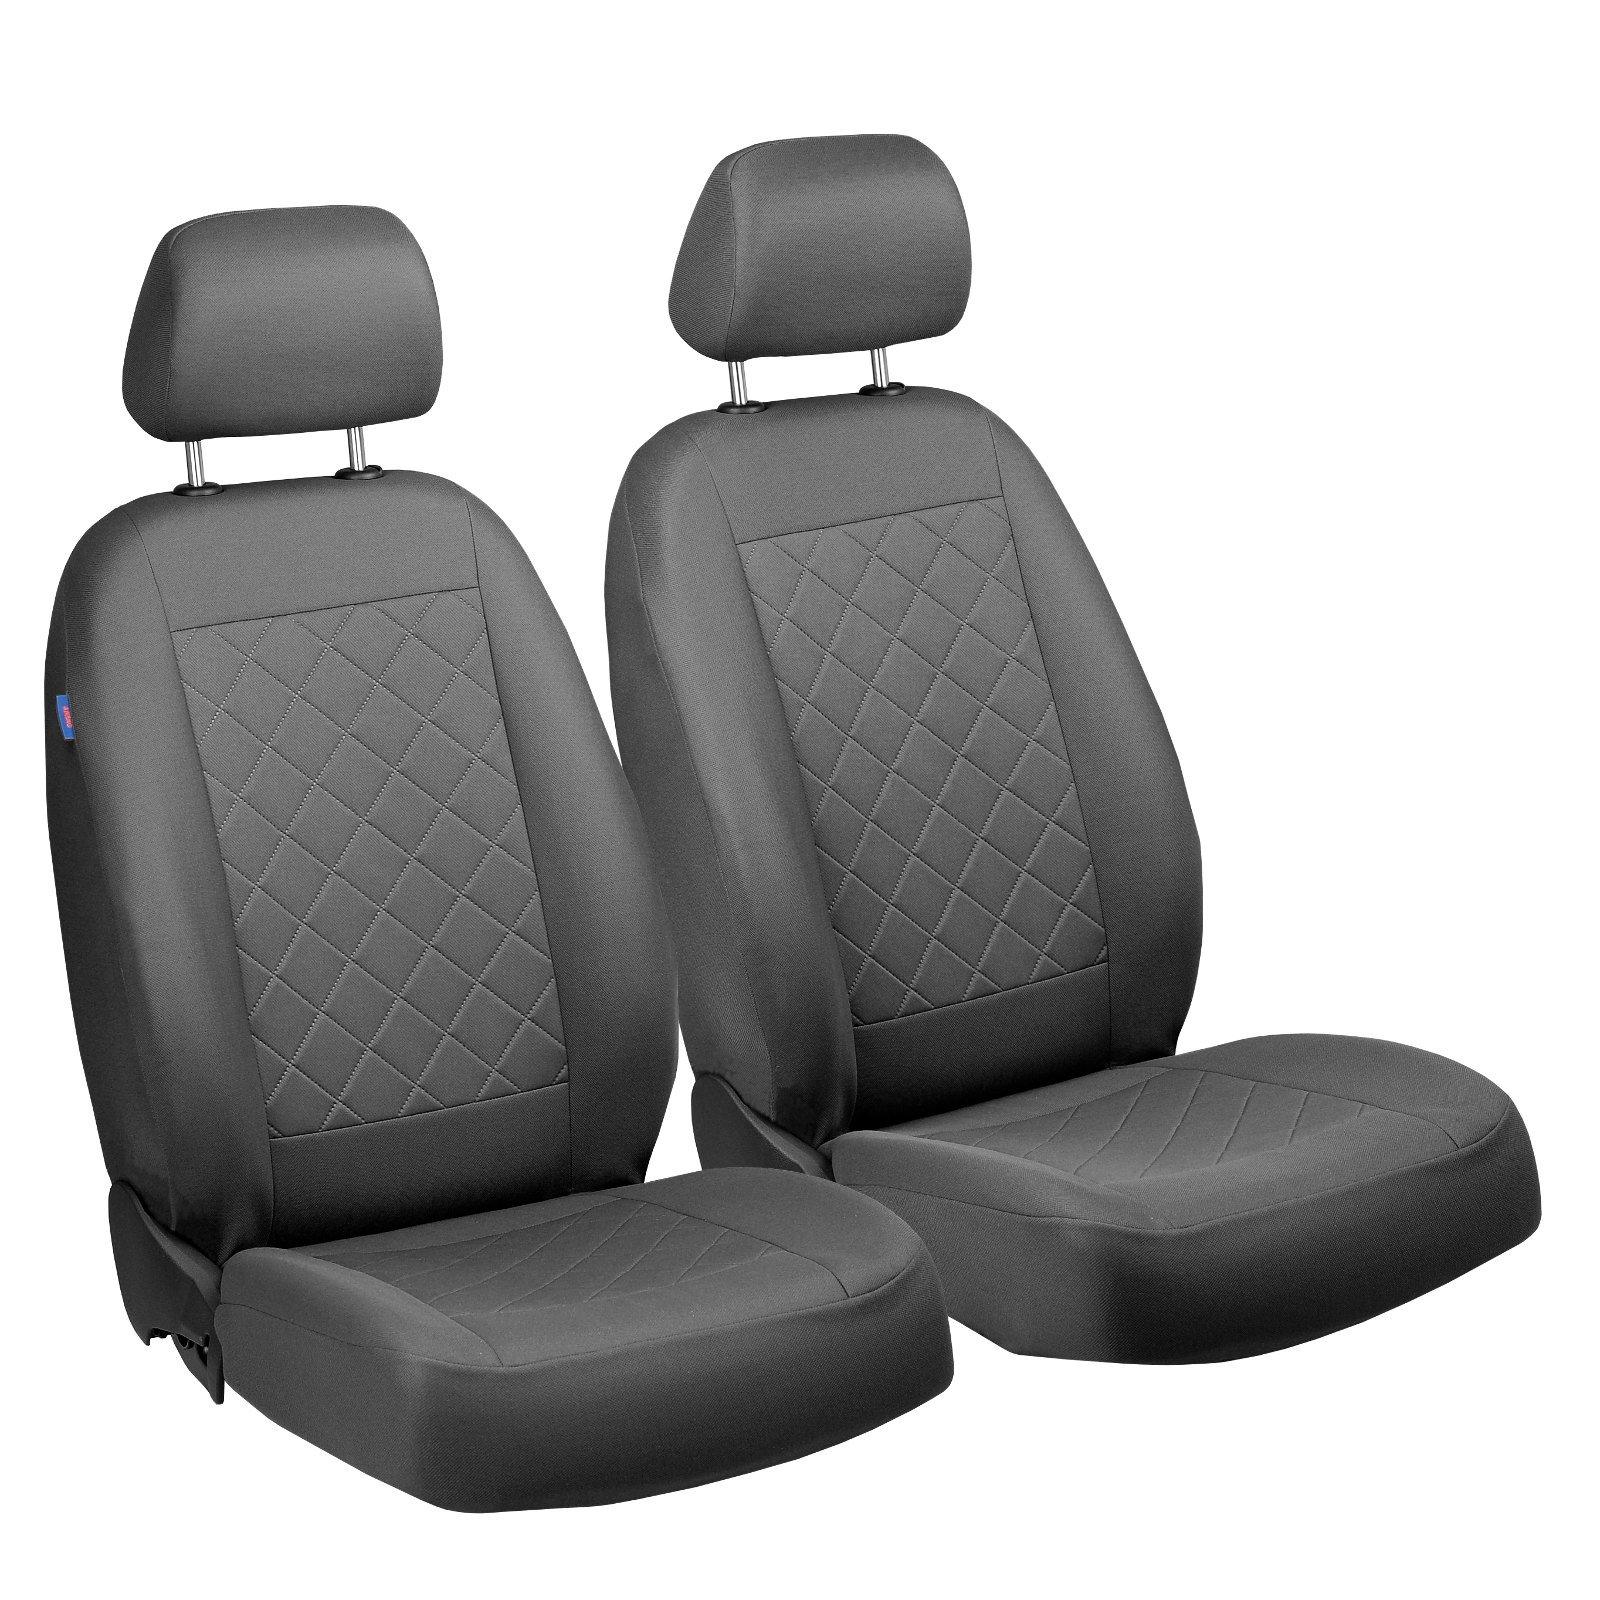 Q2 Vorne Sitzbezüge - für Fahrer und Beifahrer - Farbe Premium Grau Gepresstes Karomuster